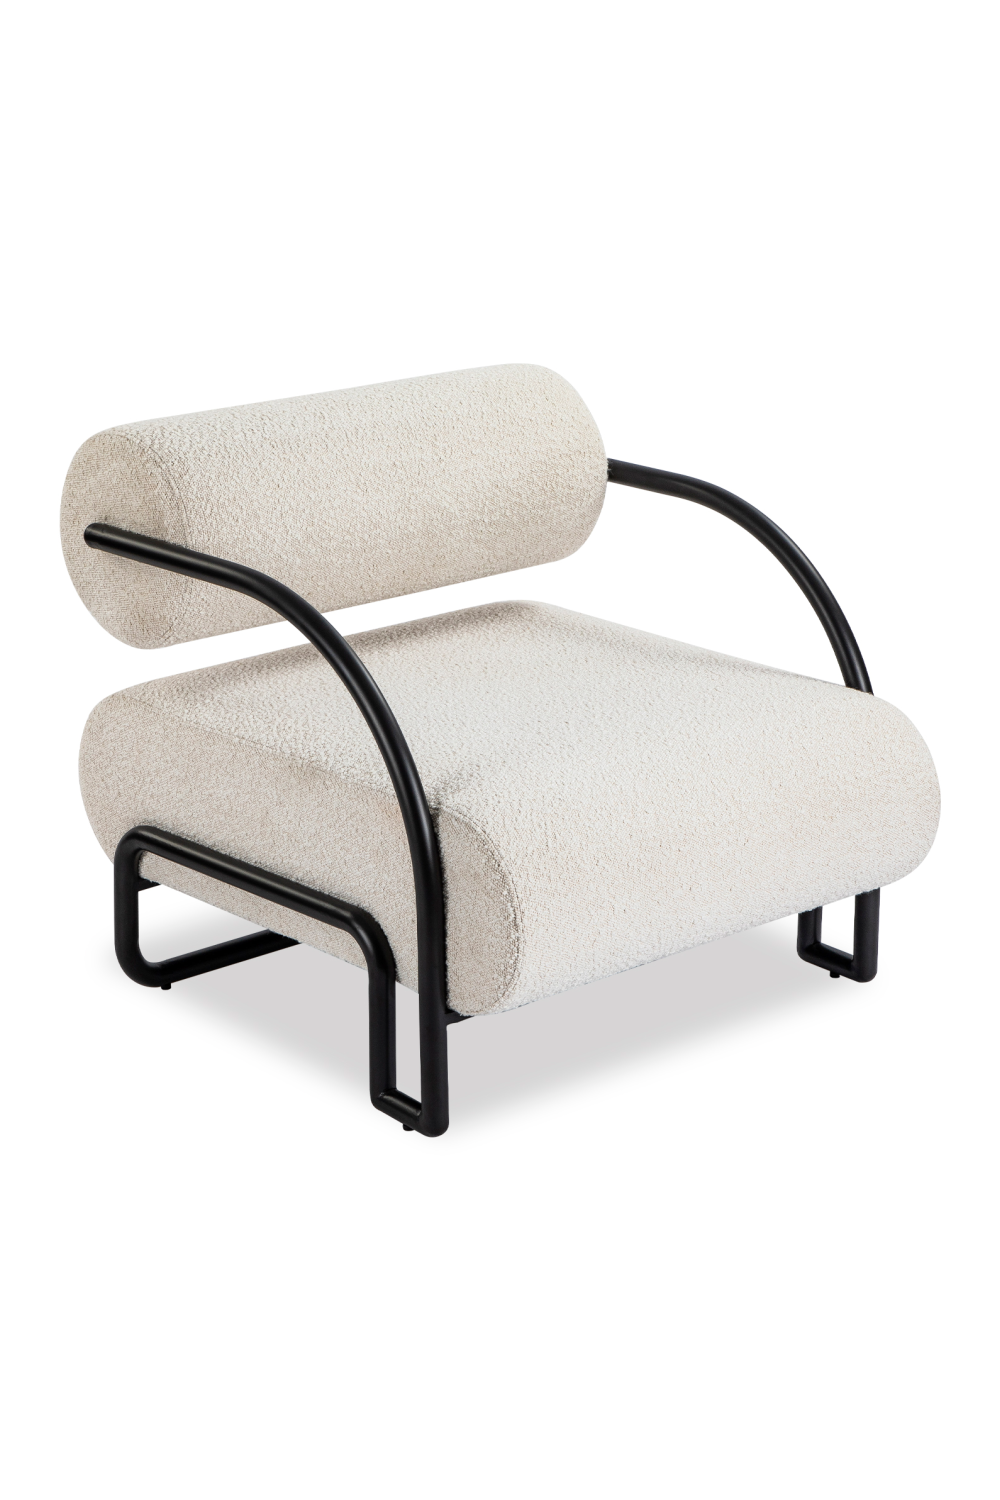 Contemporary Occasional Chair | Liang & Eimil Compo | Oroa.com